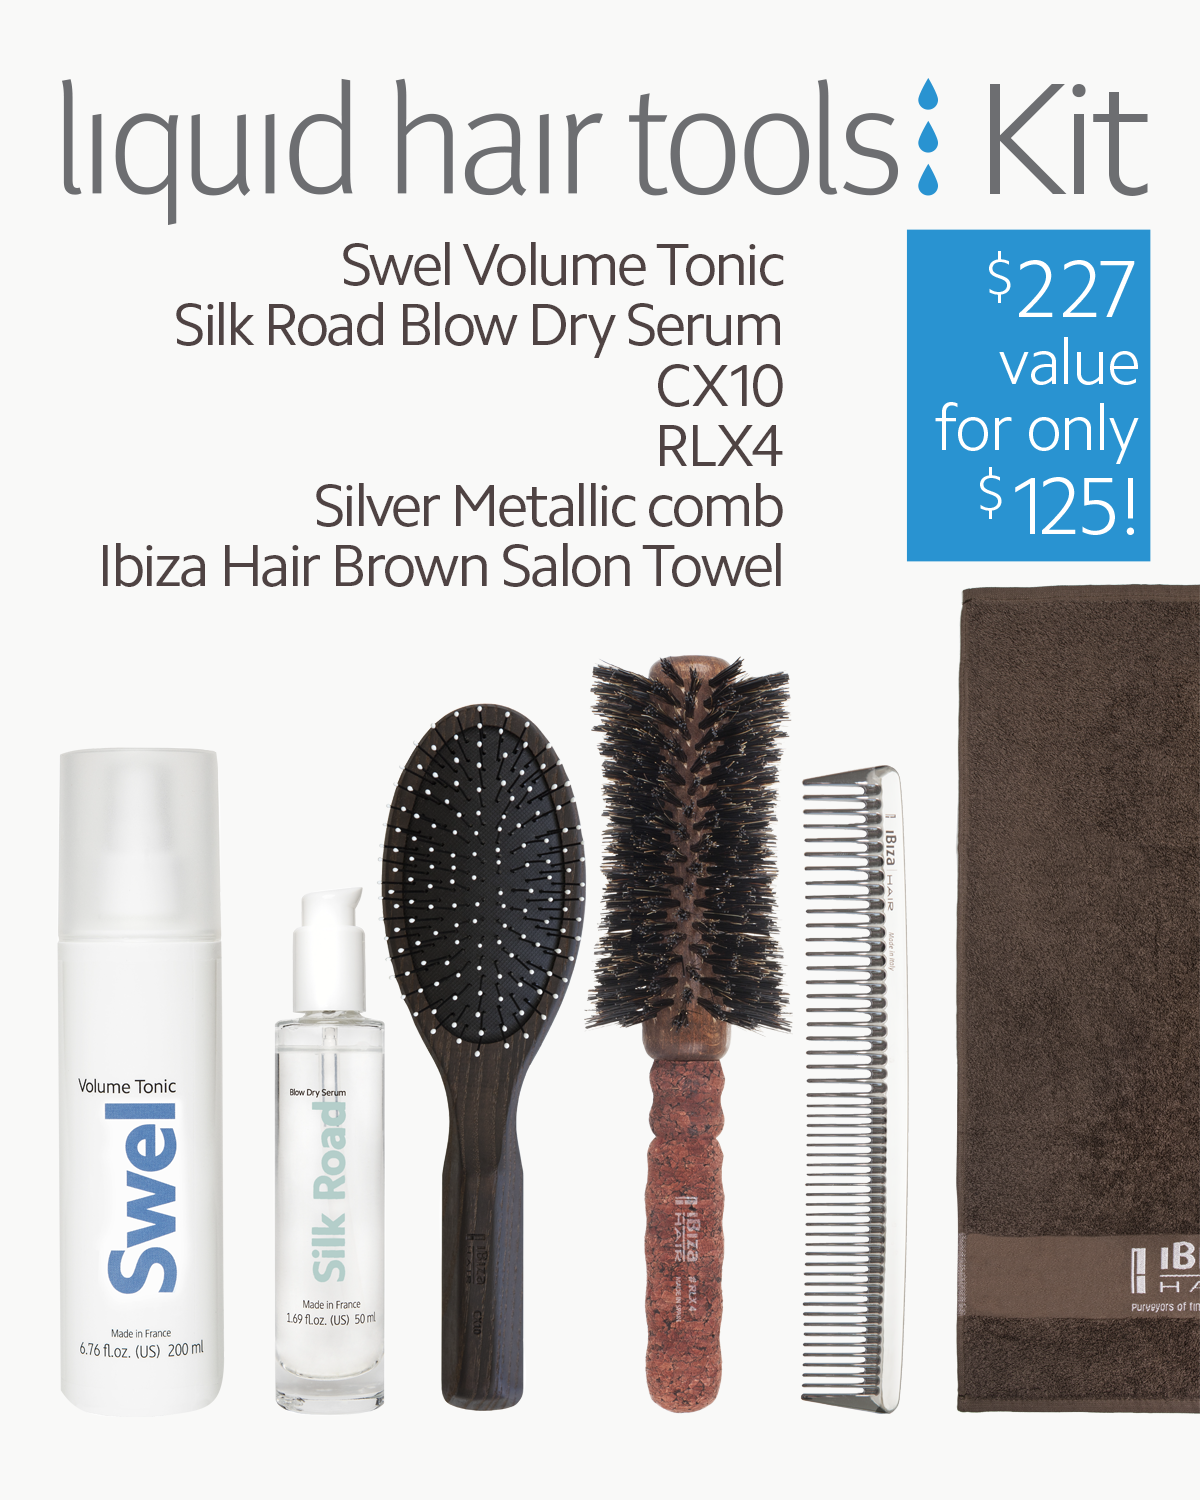 liquid hair tools Kit